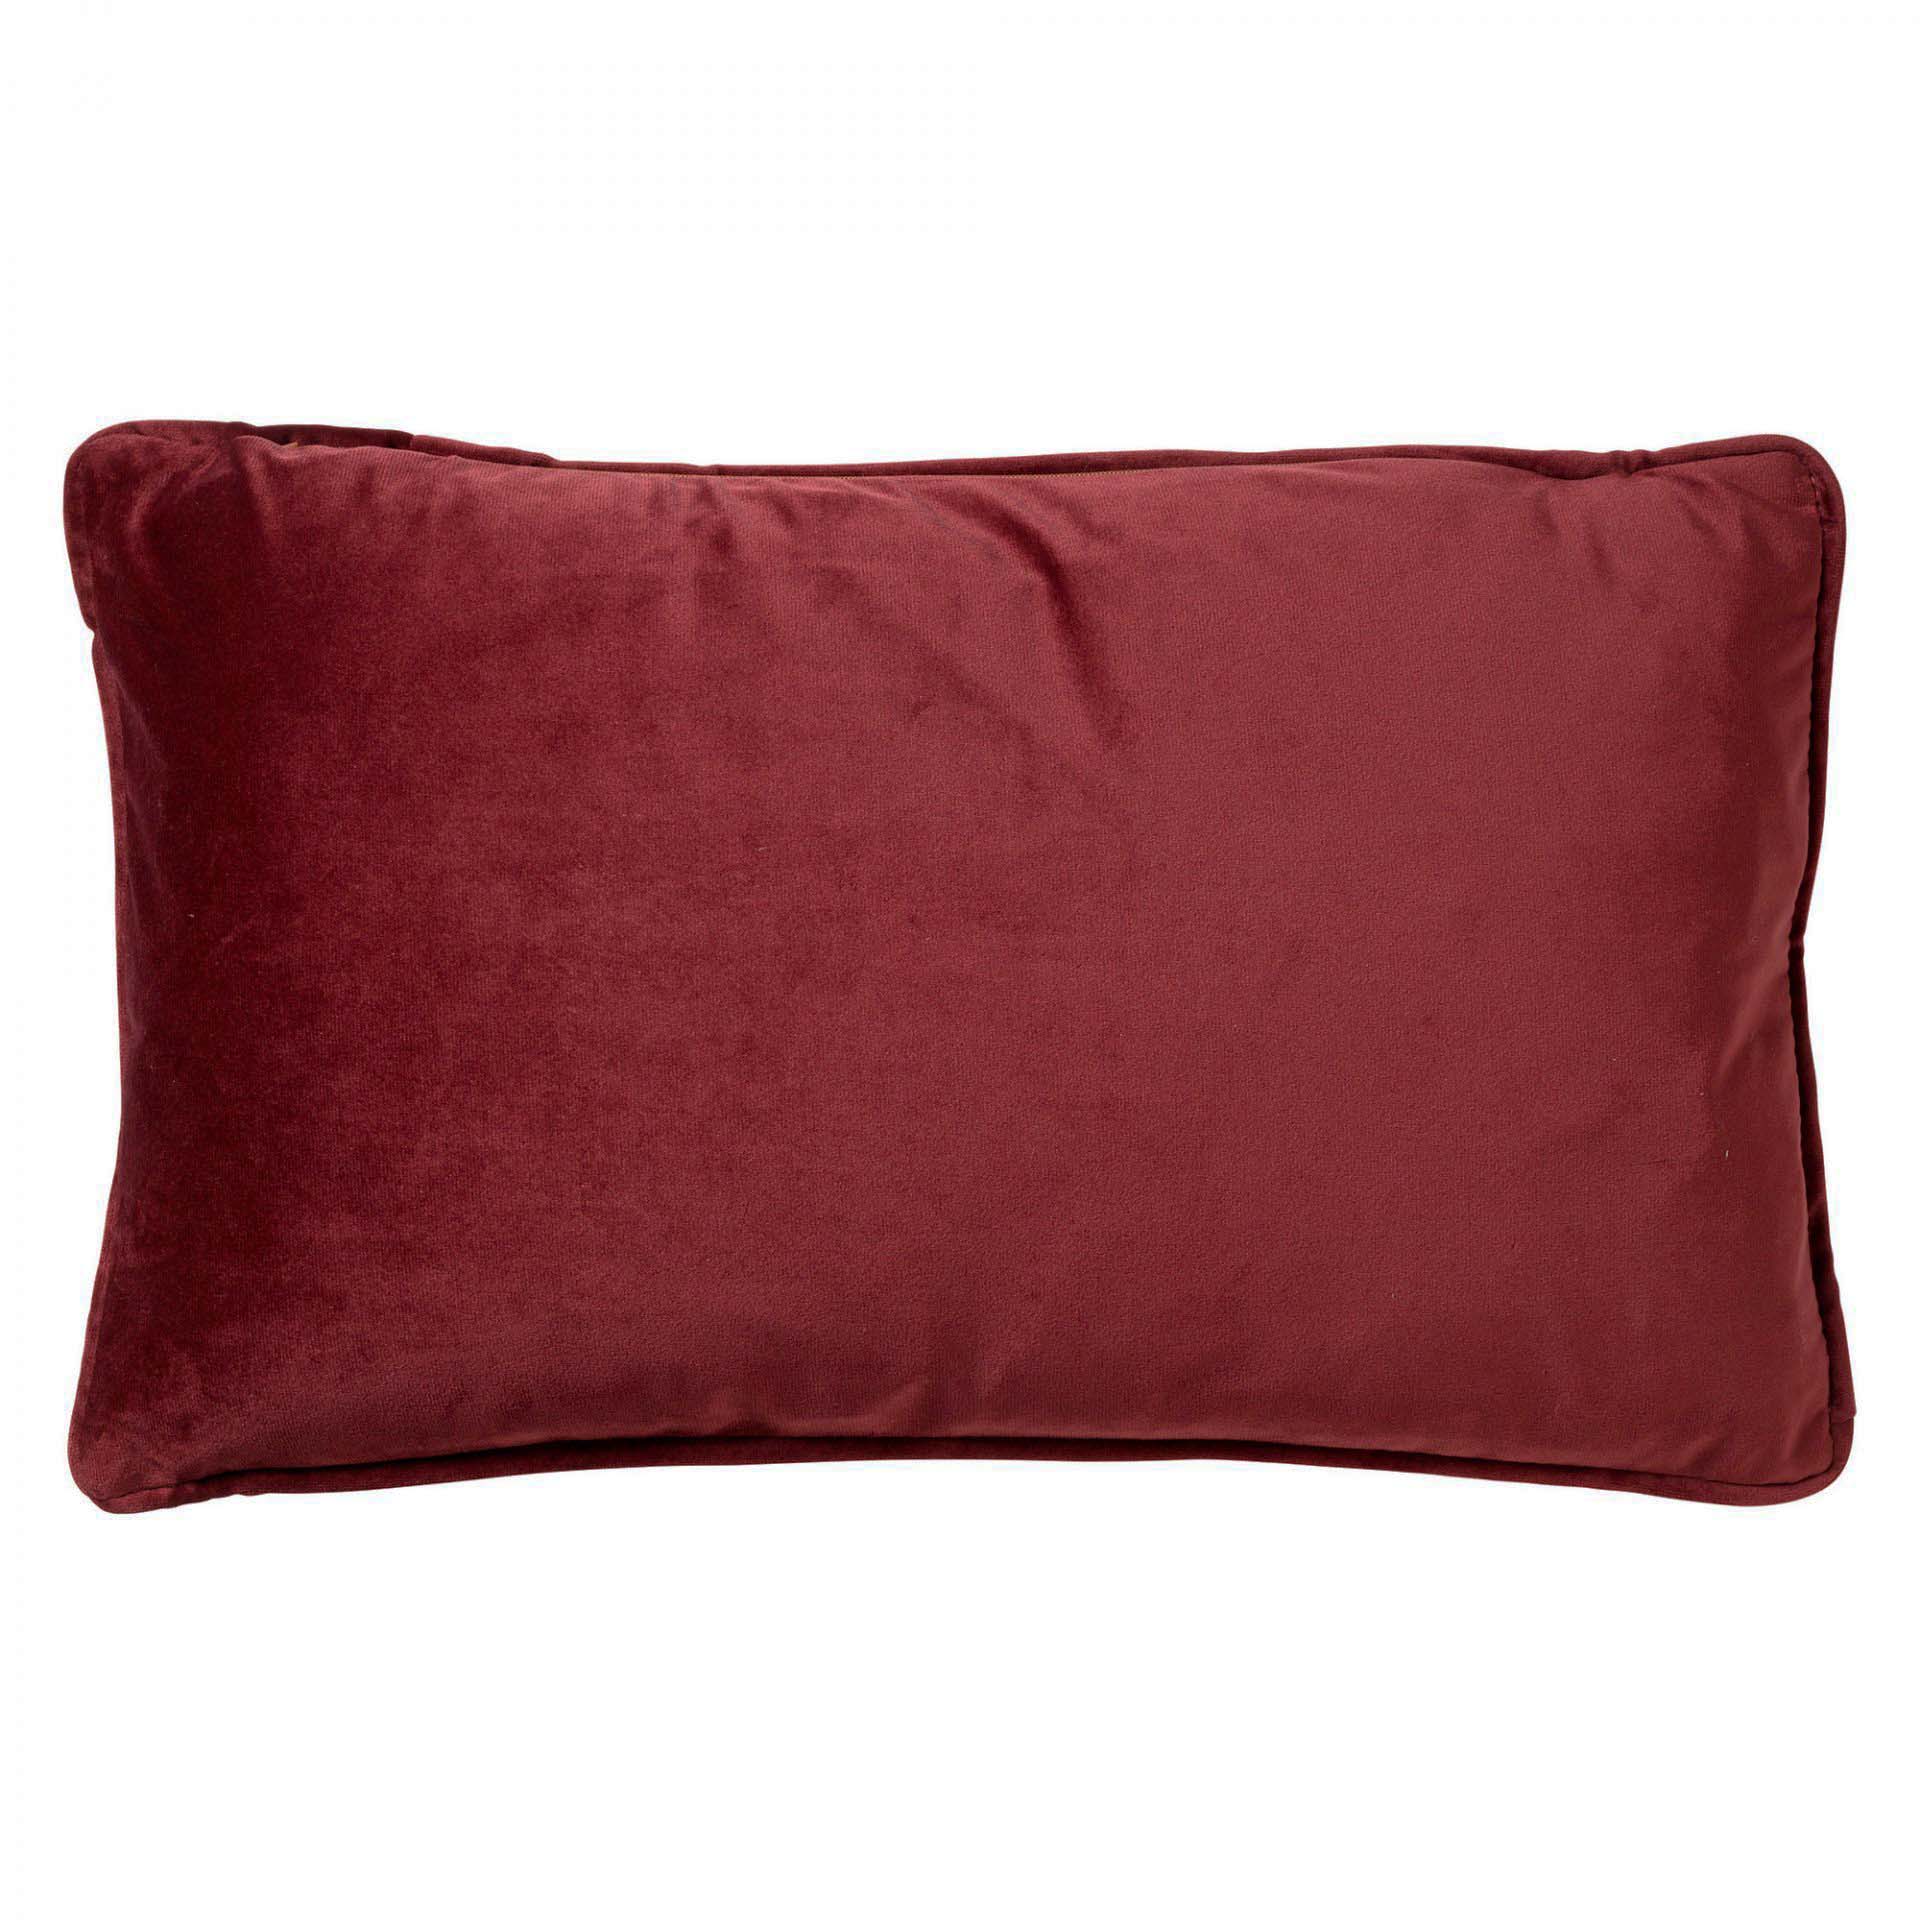 FINN - Cushion 30x50 cm Merlot - red 